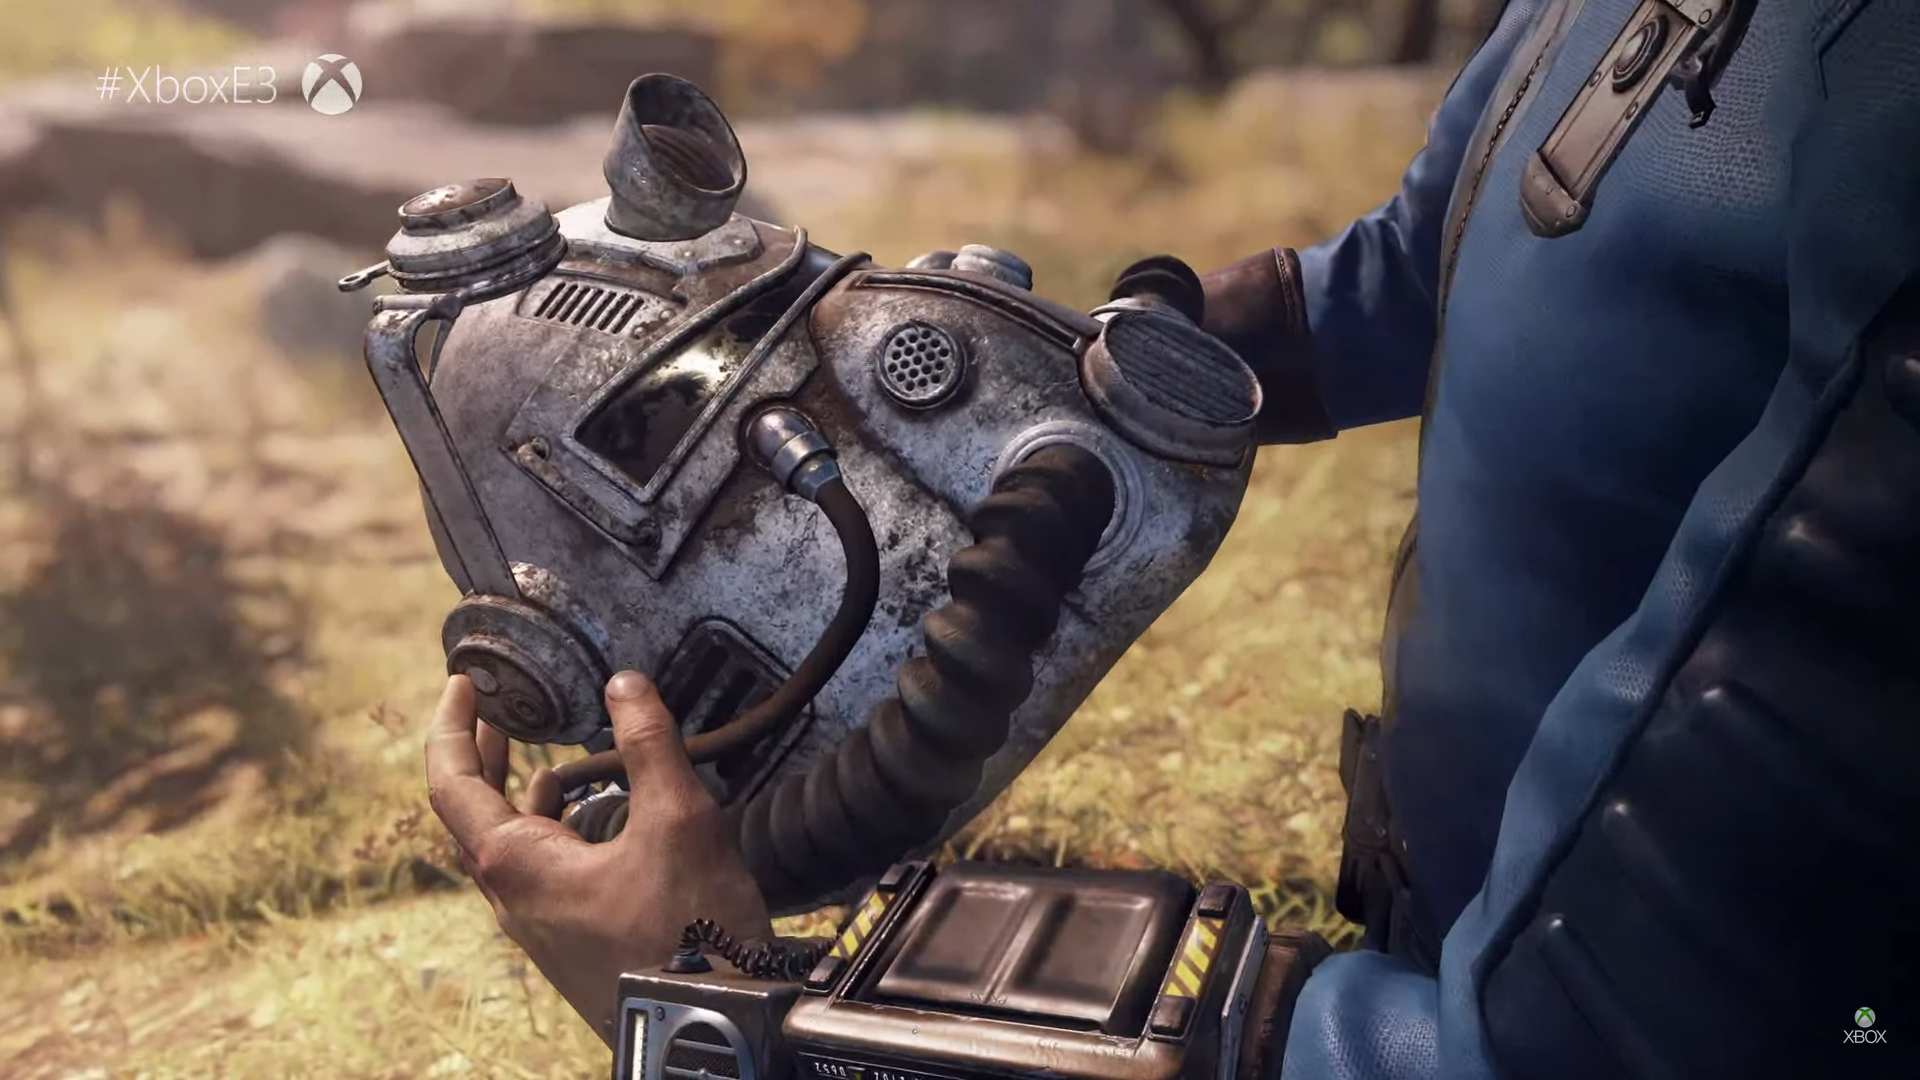 تریلر جدید بازی Fallout 76 در E3 2018 به نمایش گذاشته شد[تماشا کنید]